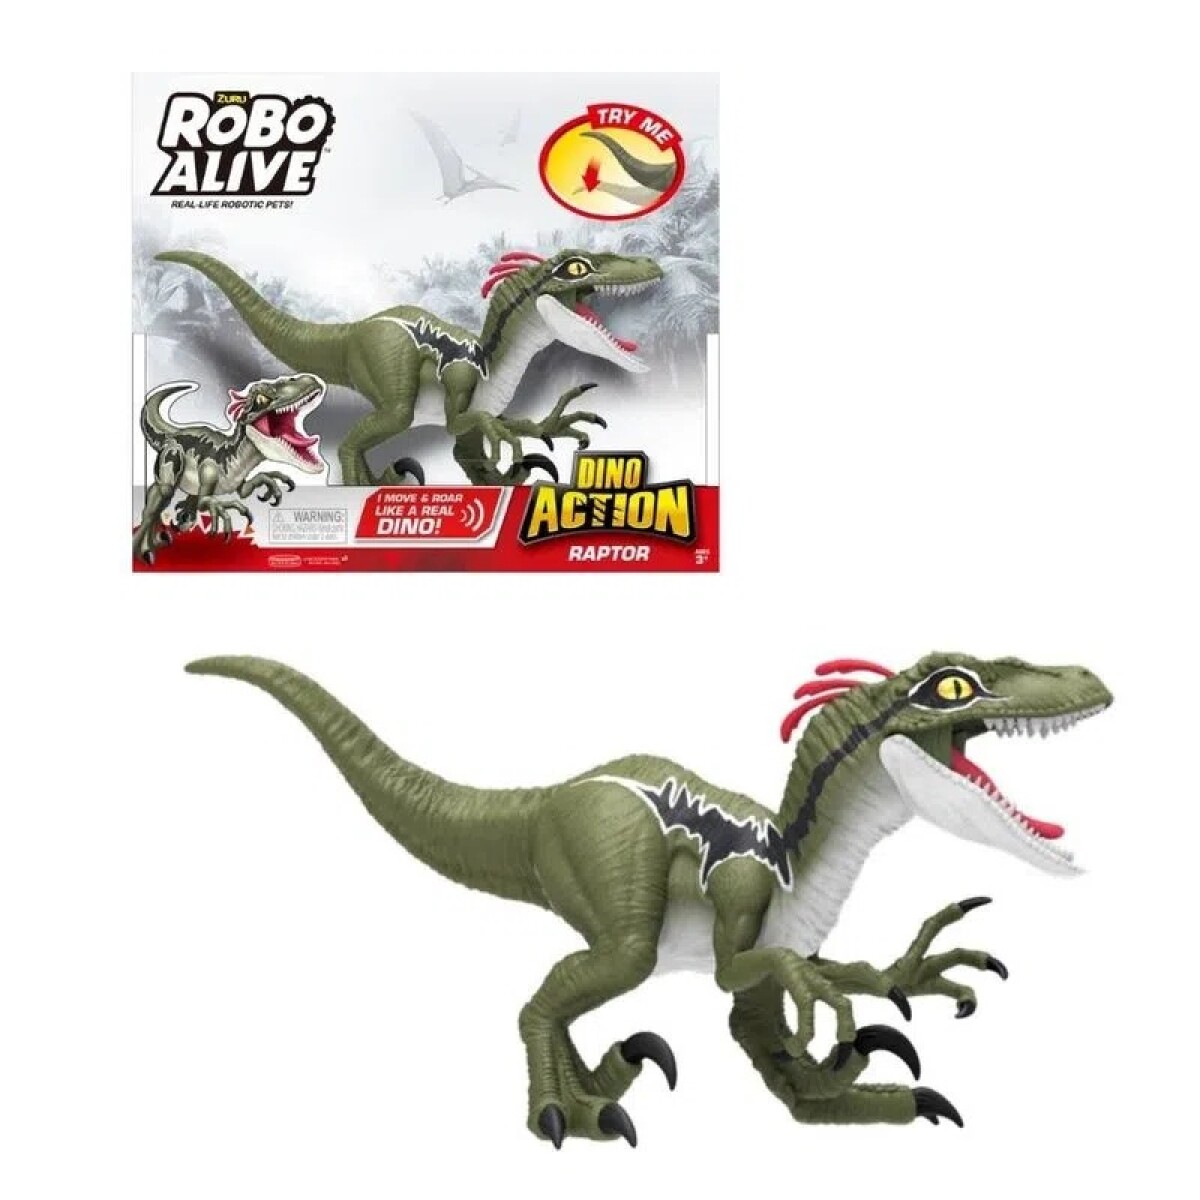 Juguete Robo Alive Dino Action Raptor - 001 